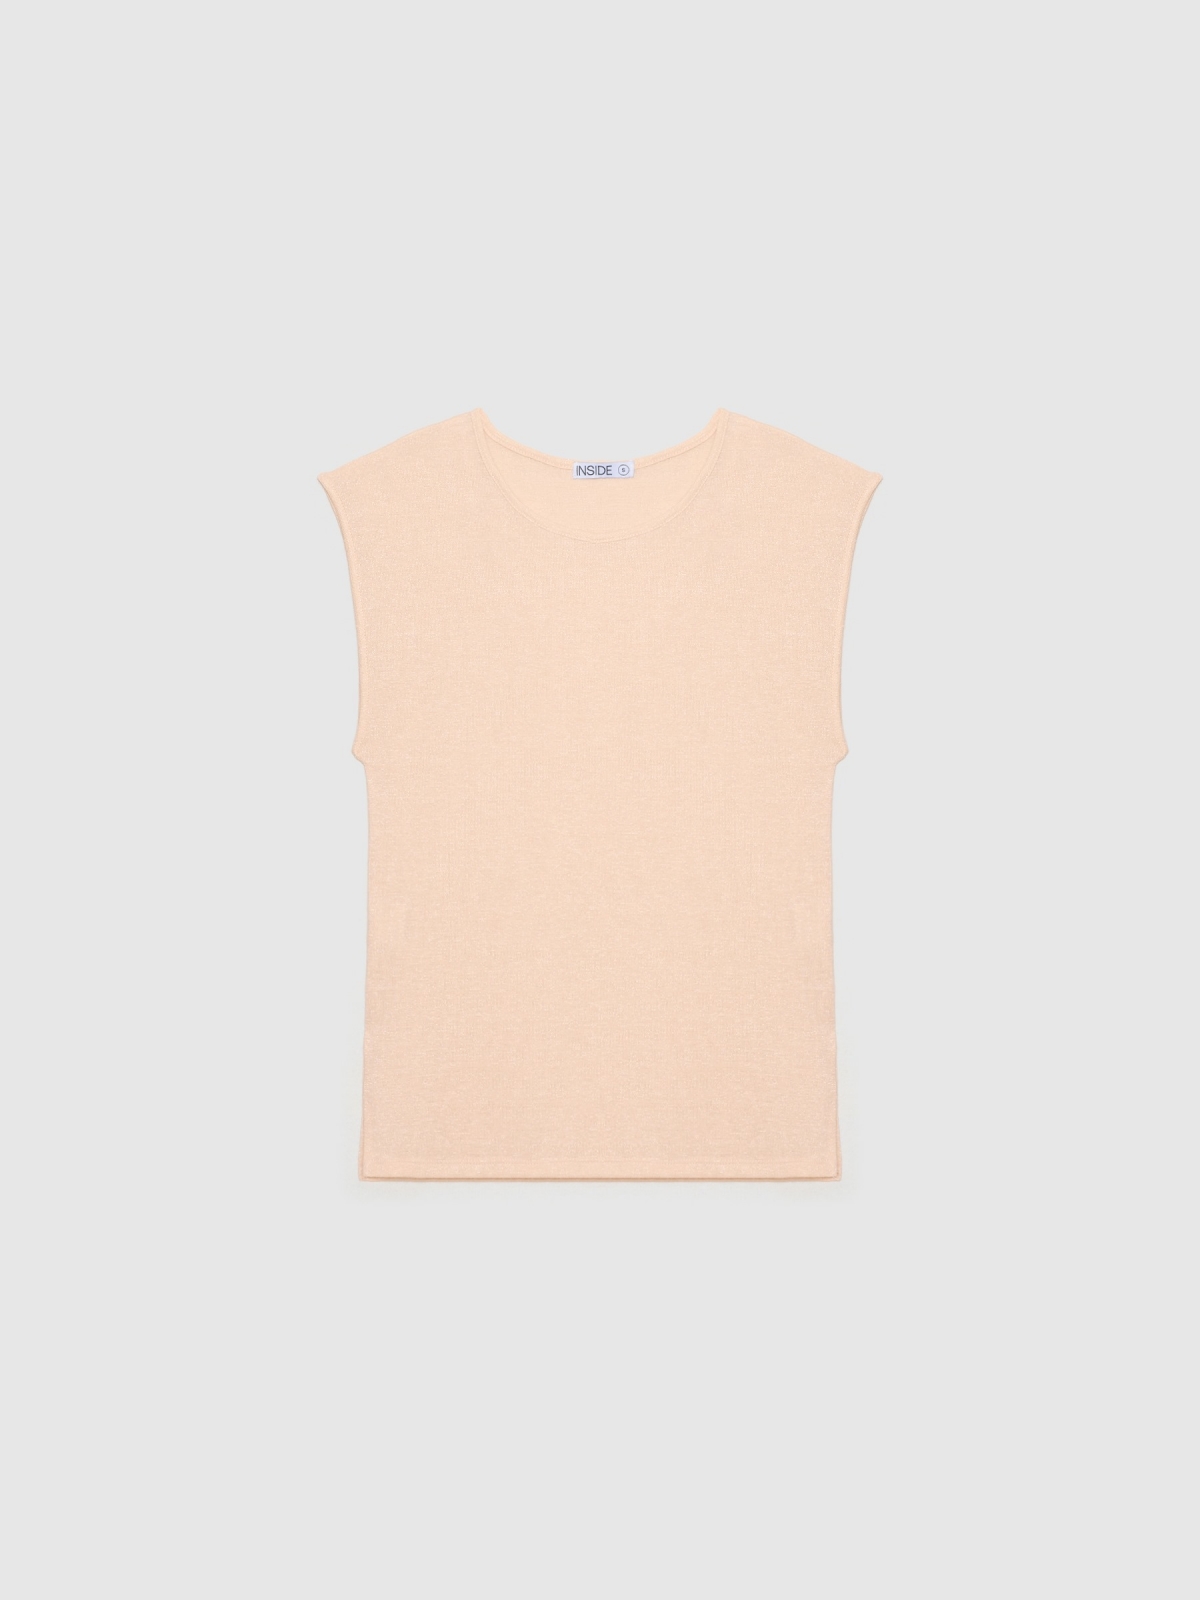  Fluid lurex t-shirt nude pink